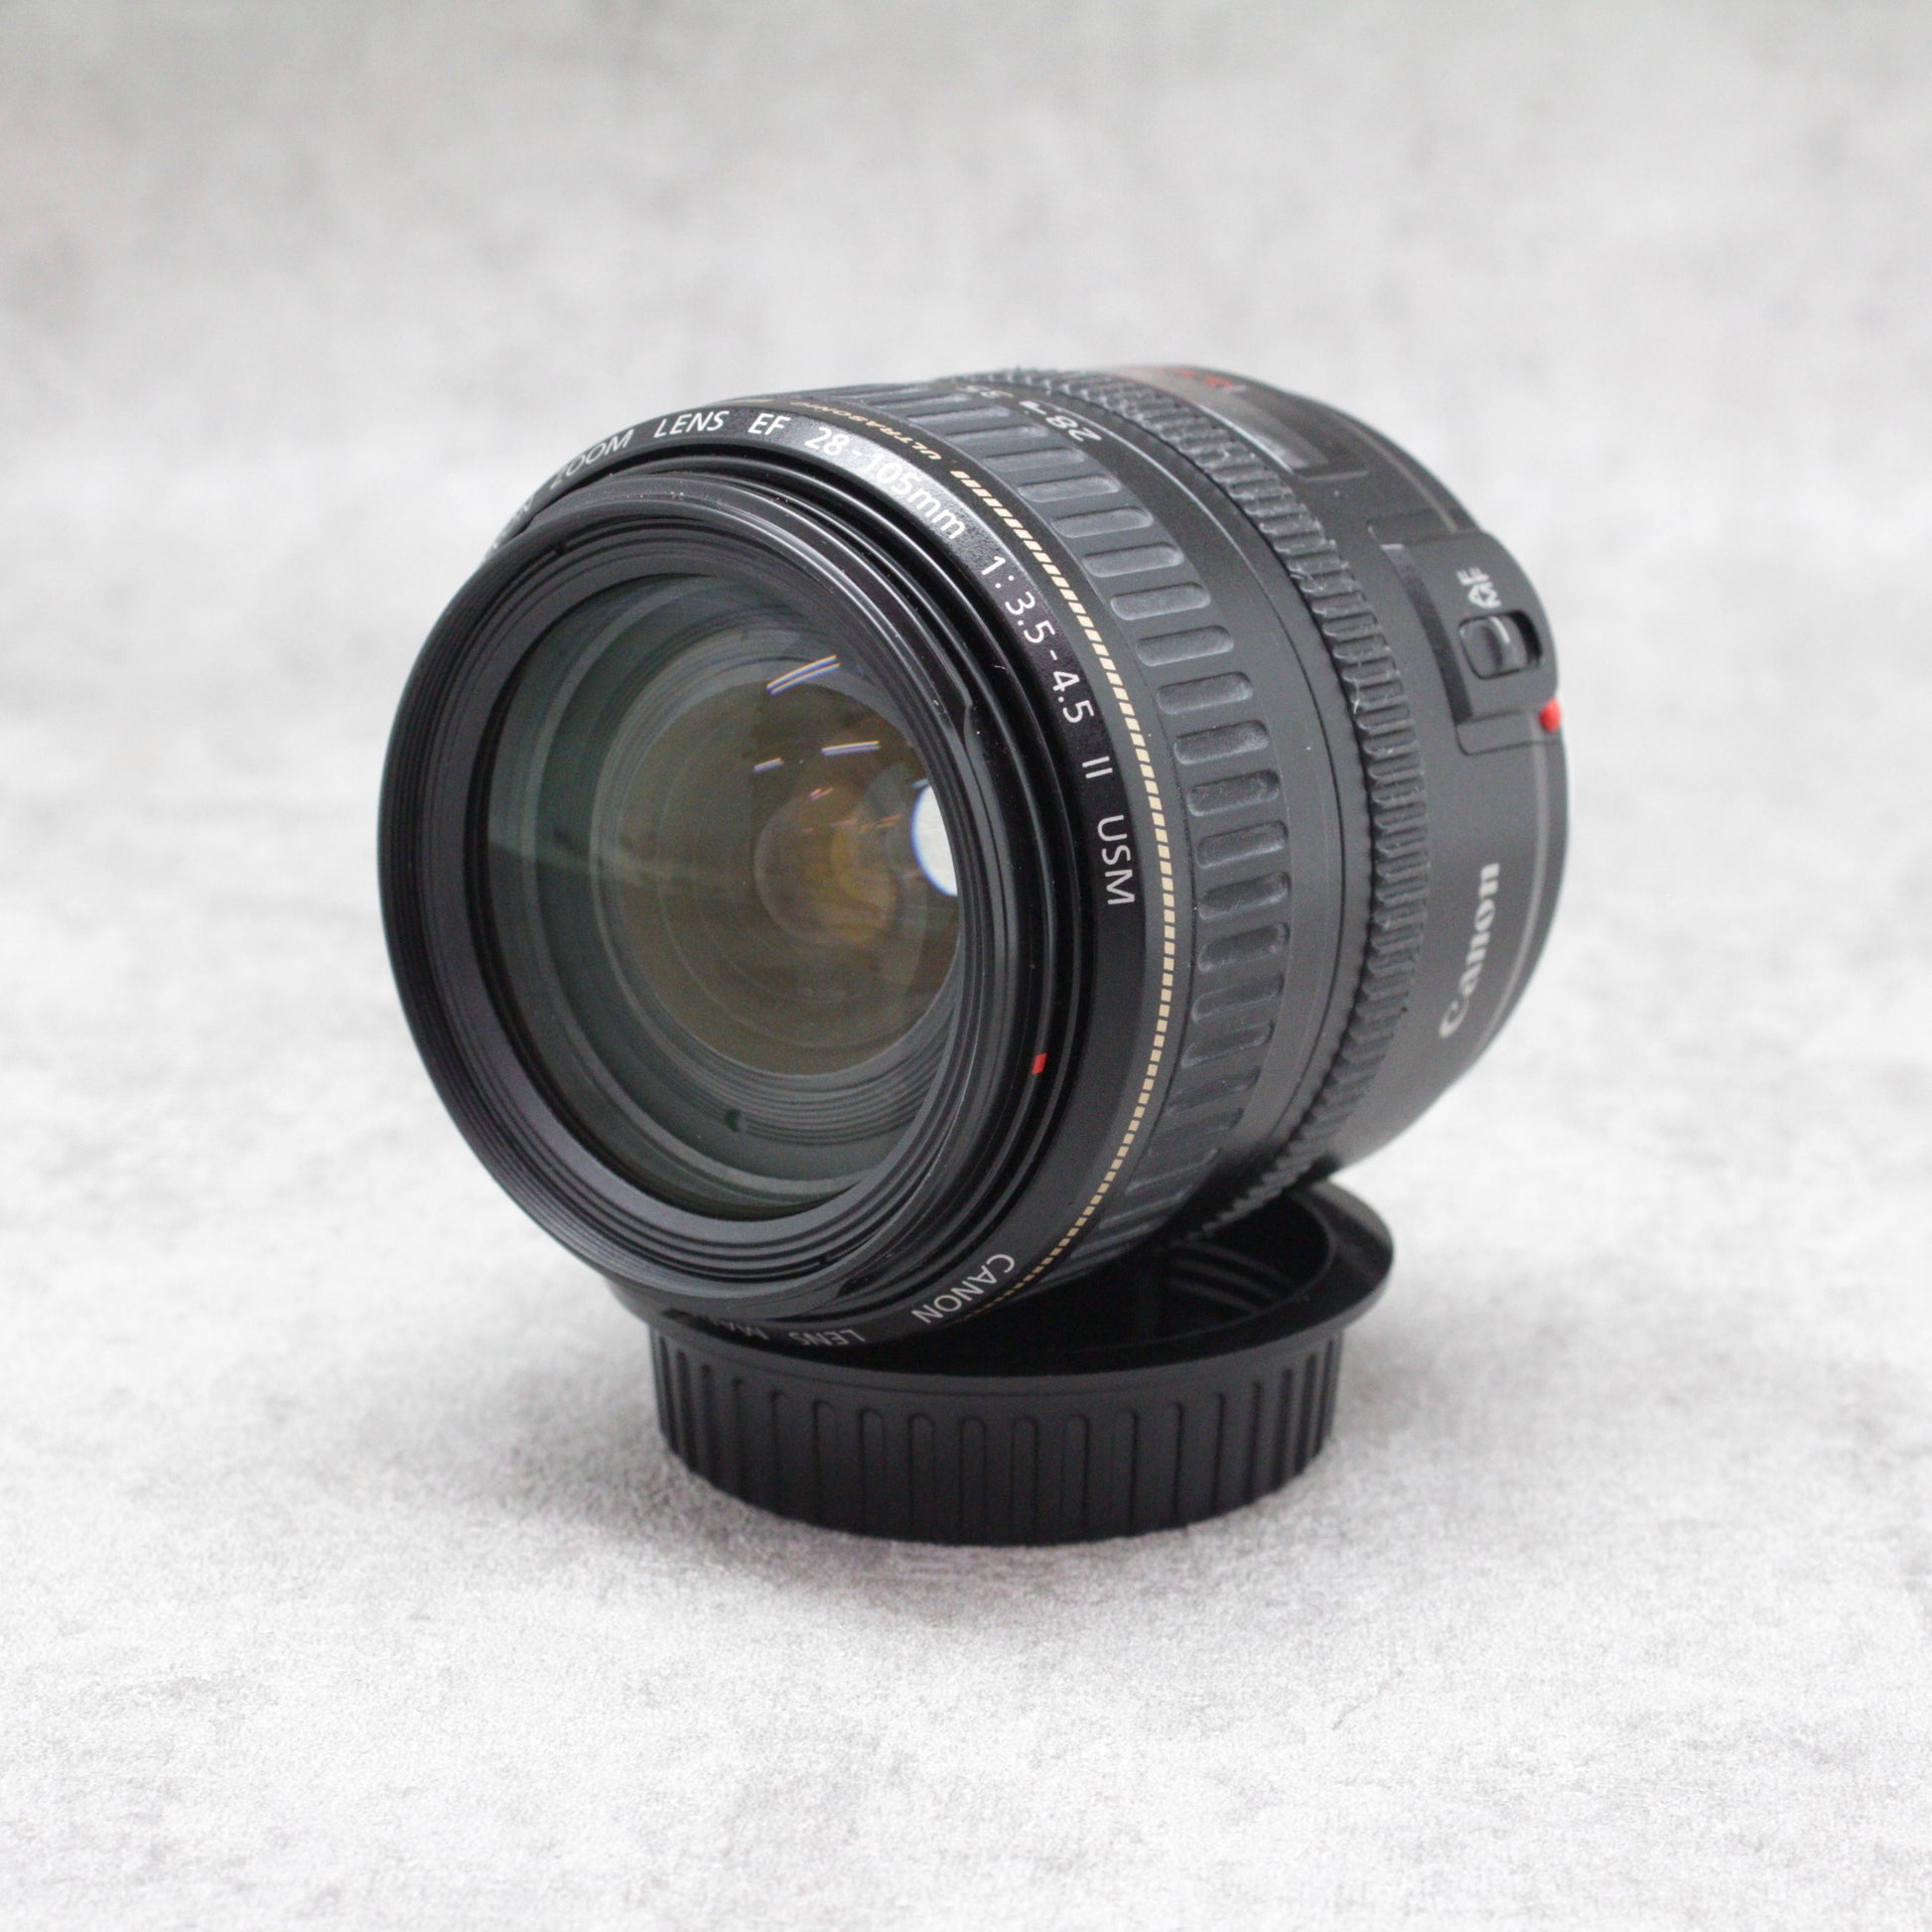 Canon EF レンズ 28-105mm F3.5-4.5 USM - レンズ(ズーム)